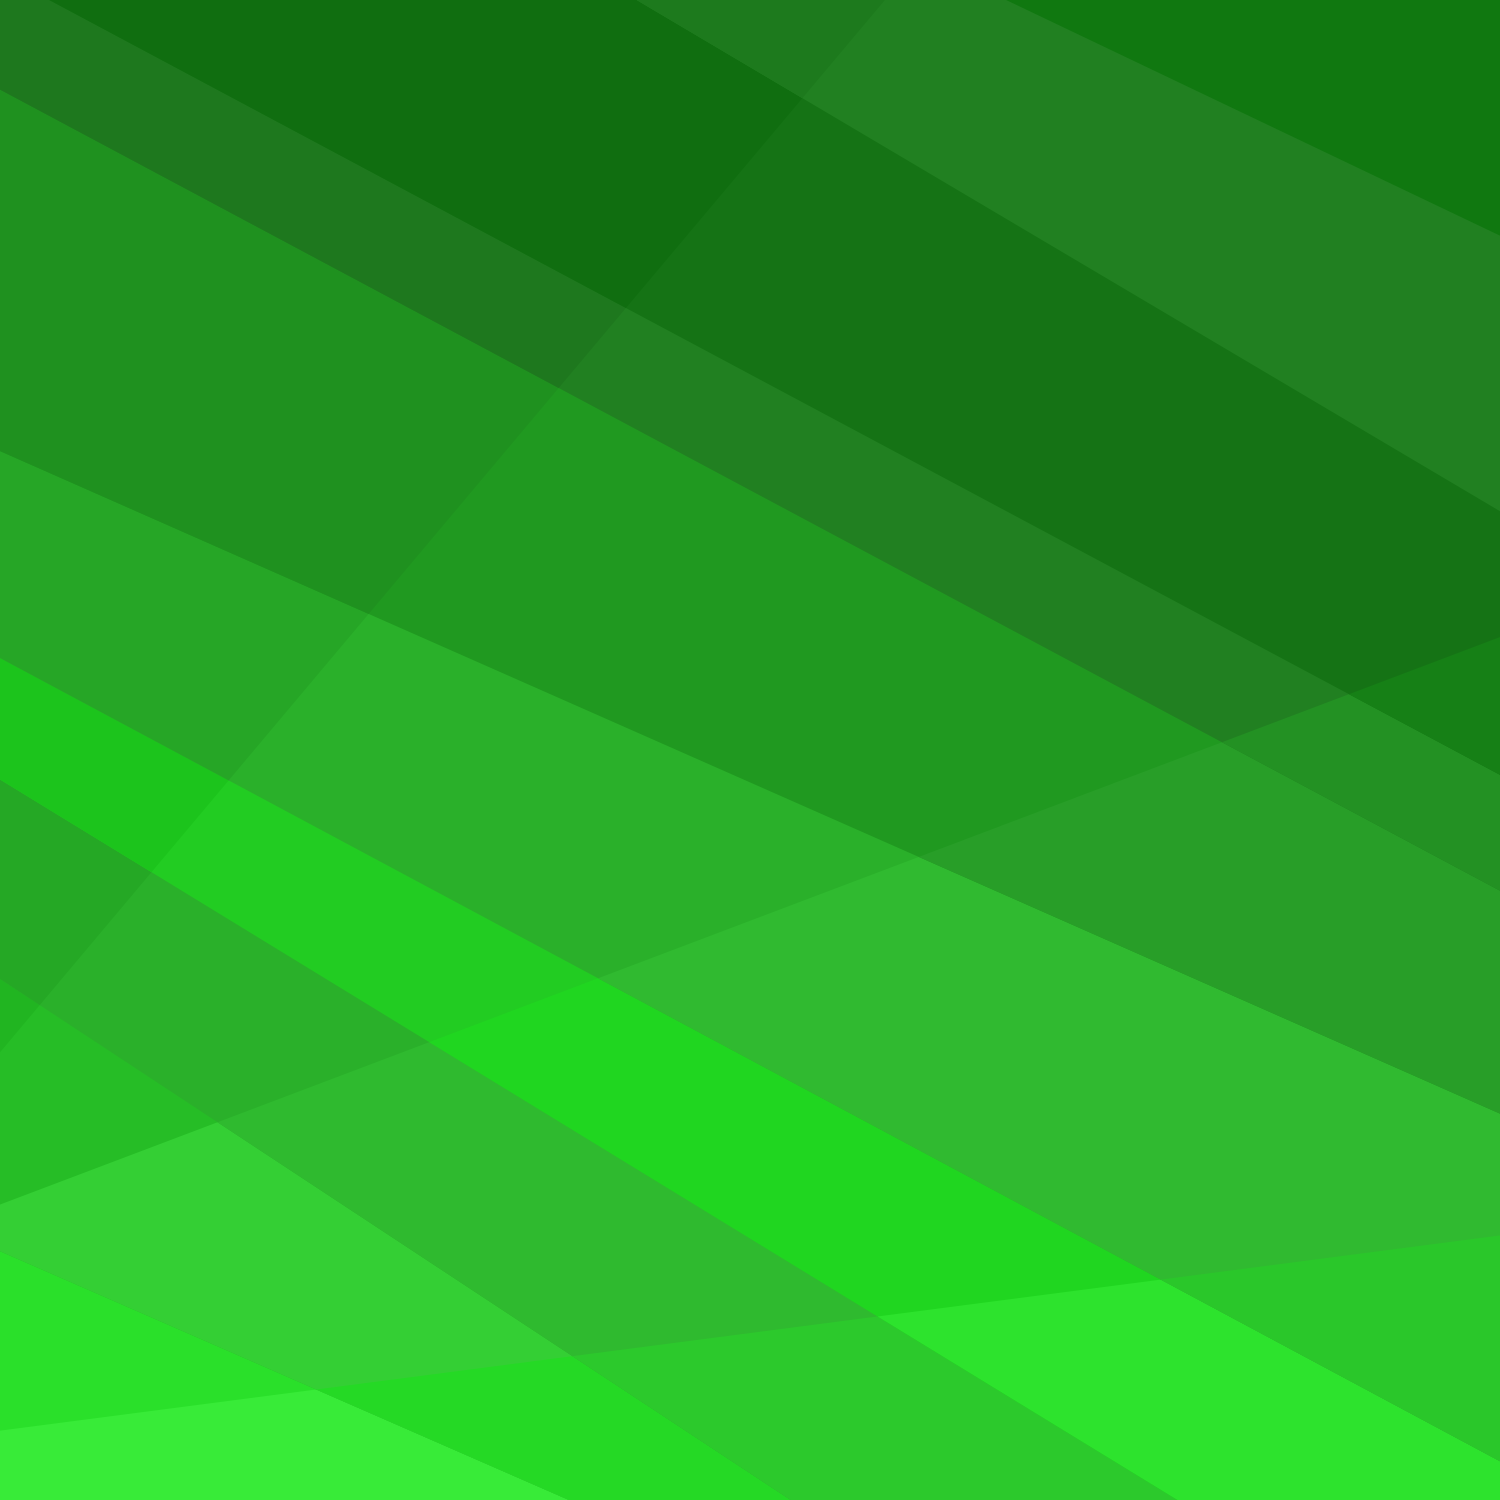 Green Background Design